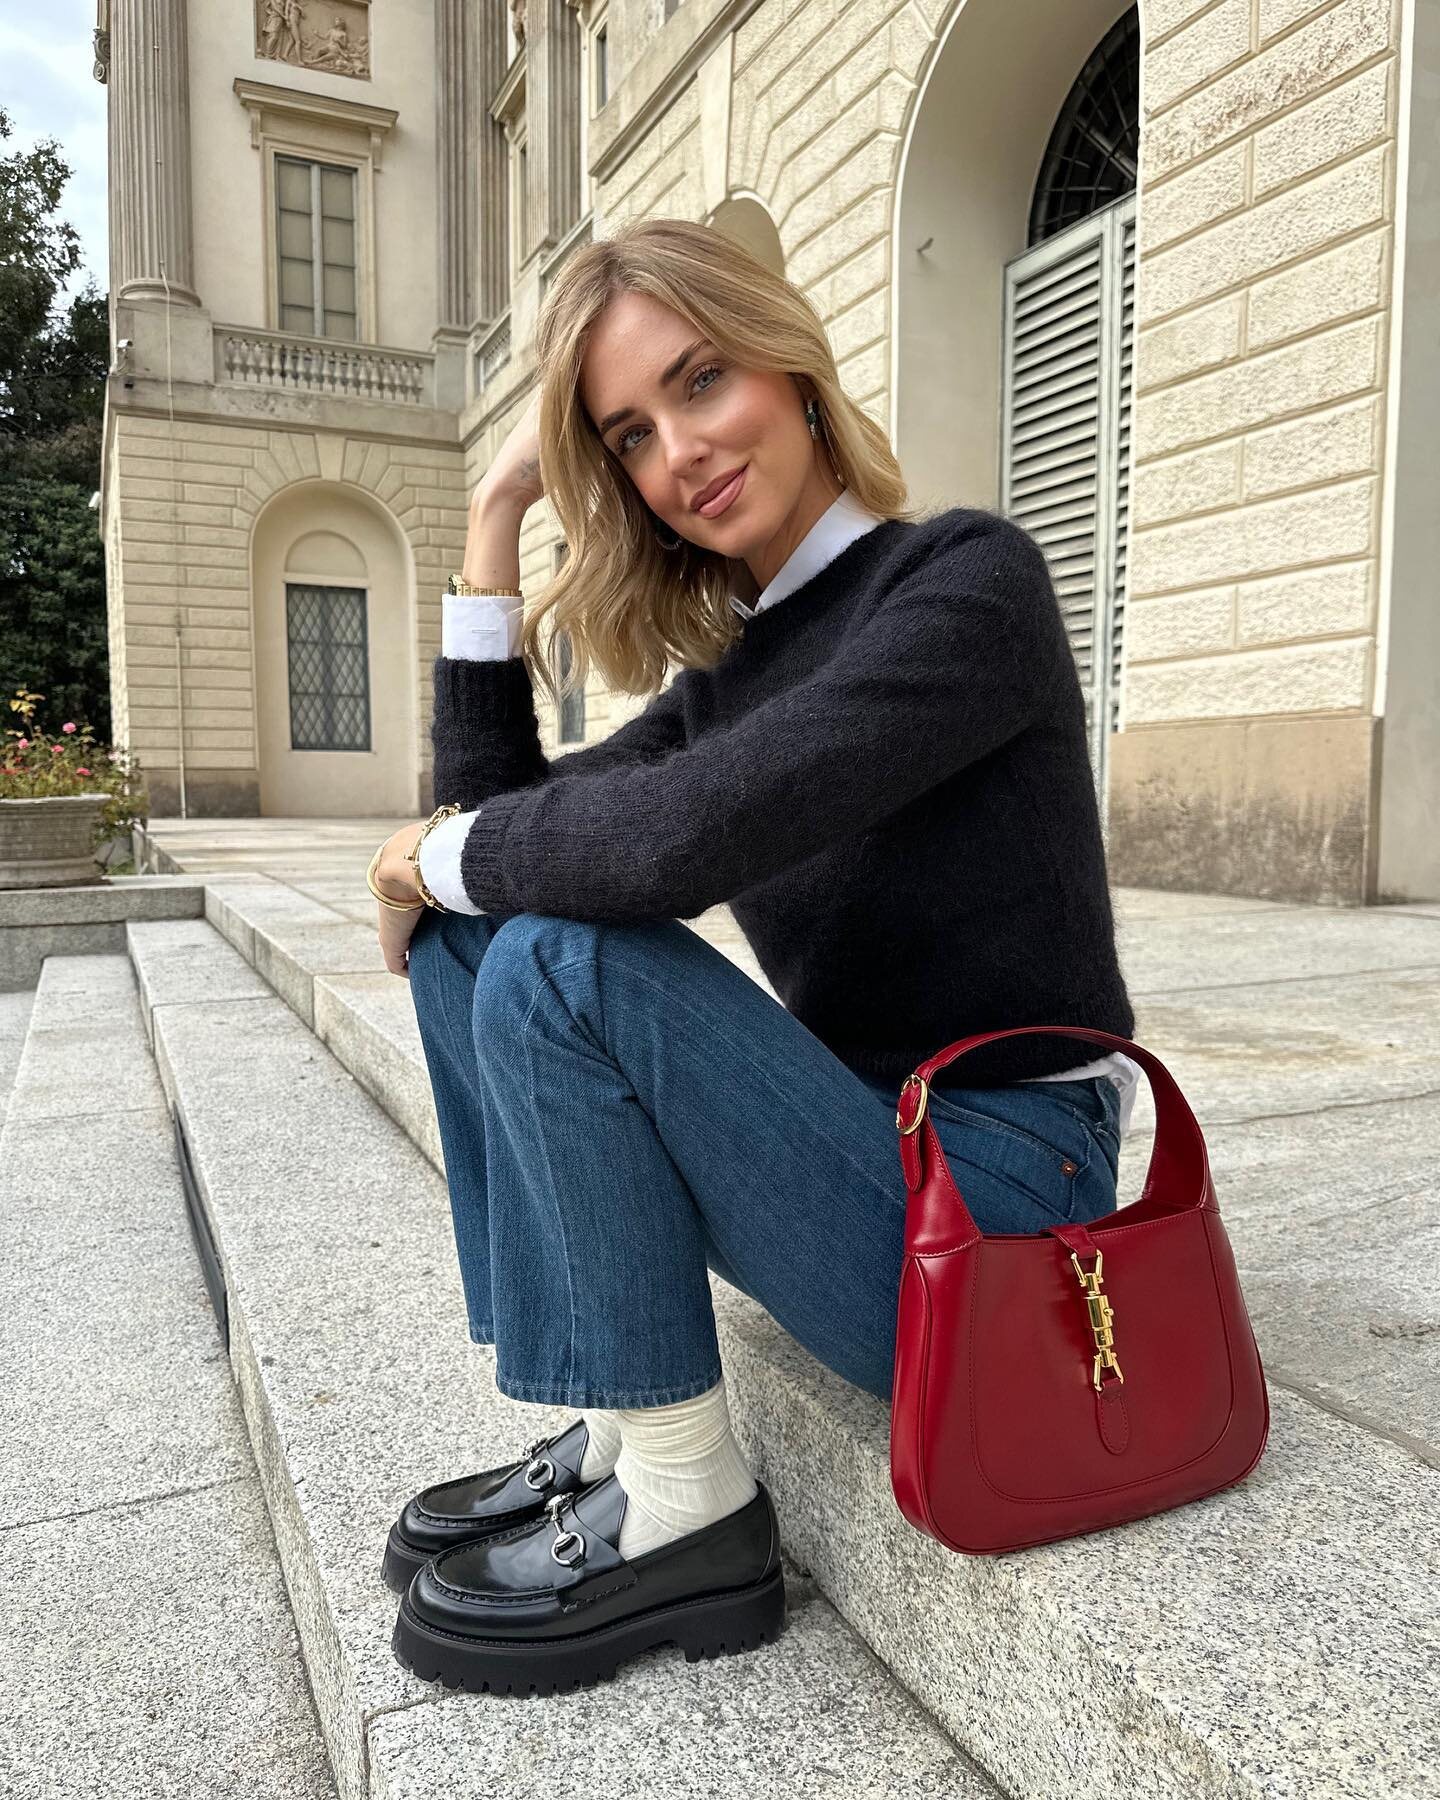 Chiara Ferragni con el bolso de Gucci en 'cherry red' | Foto: Instagram @chiaraferragni